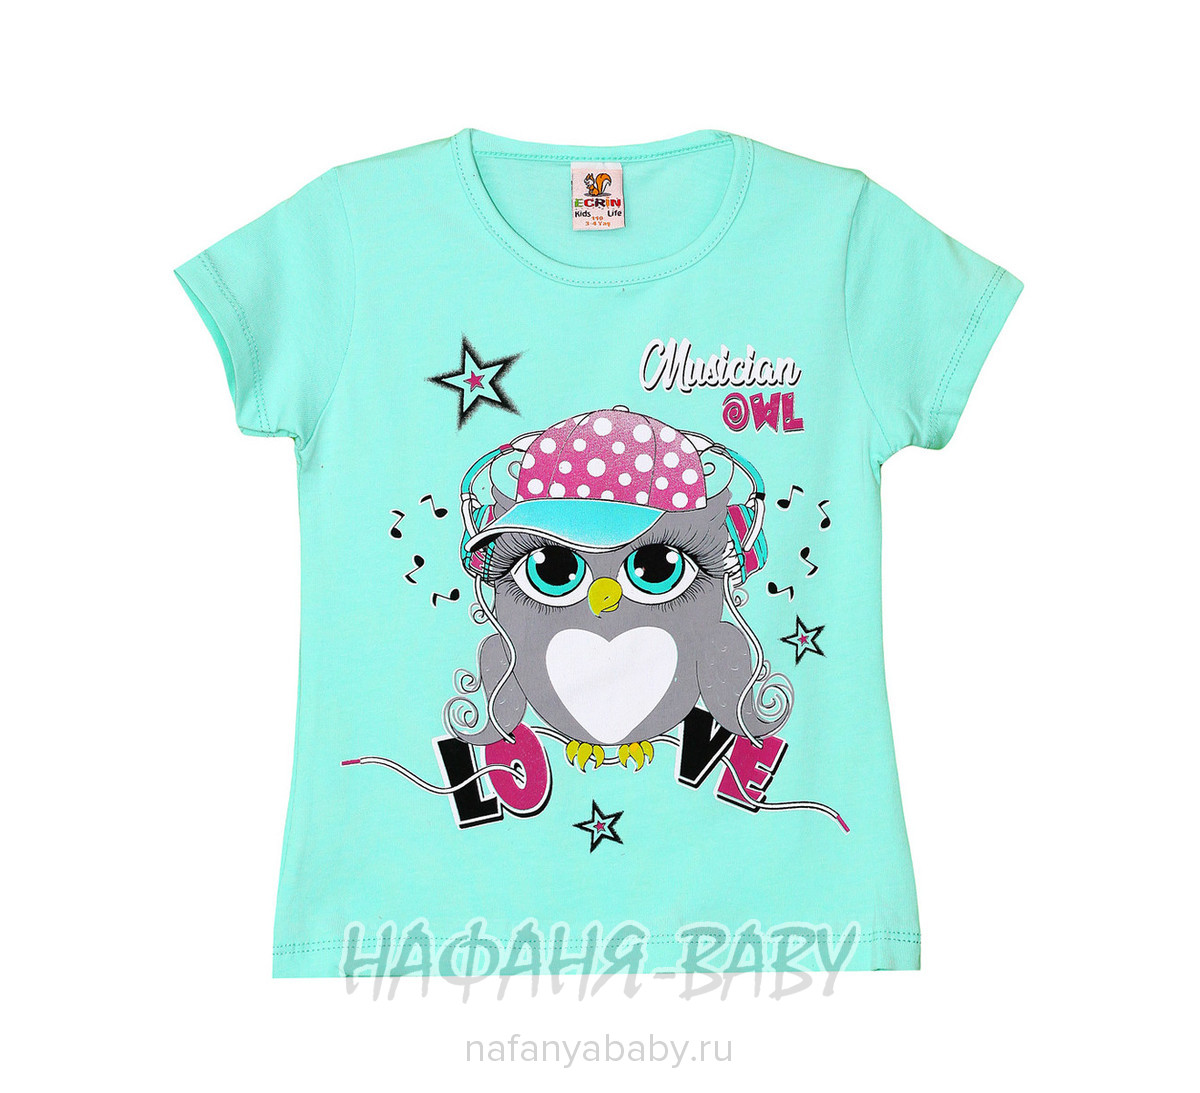 Детская футболка ECRIN арт: 2838, 5-9 лет, 1-4 года, цвет бирюзовый, оптом Турция